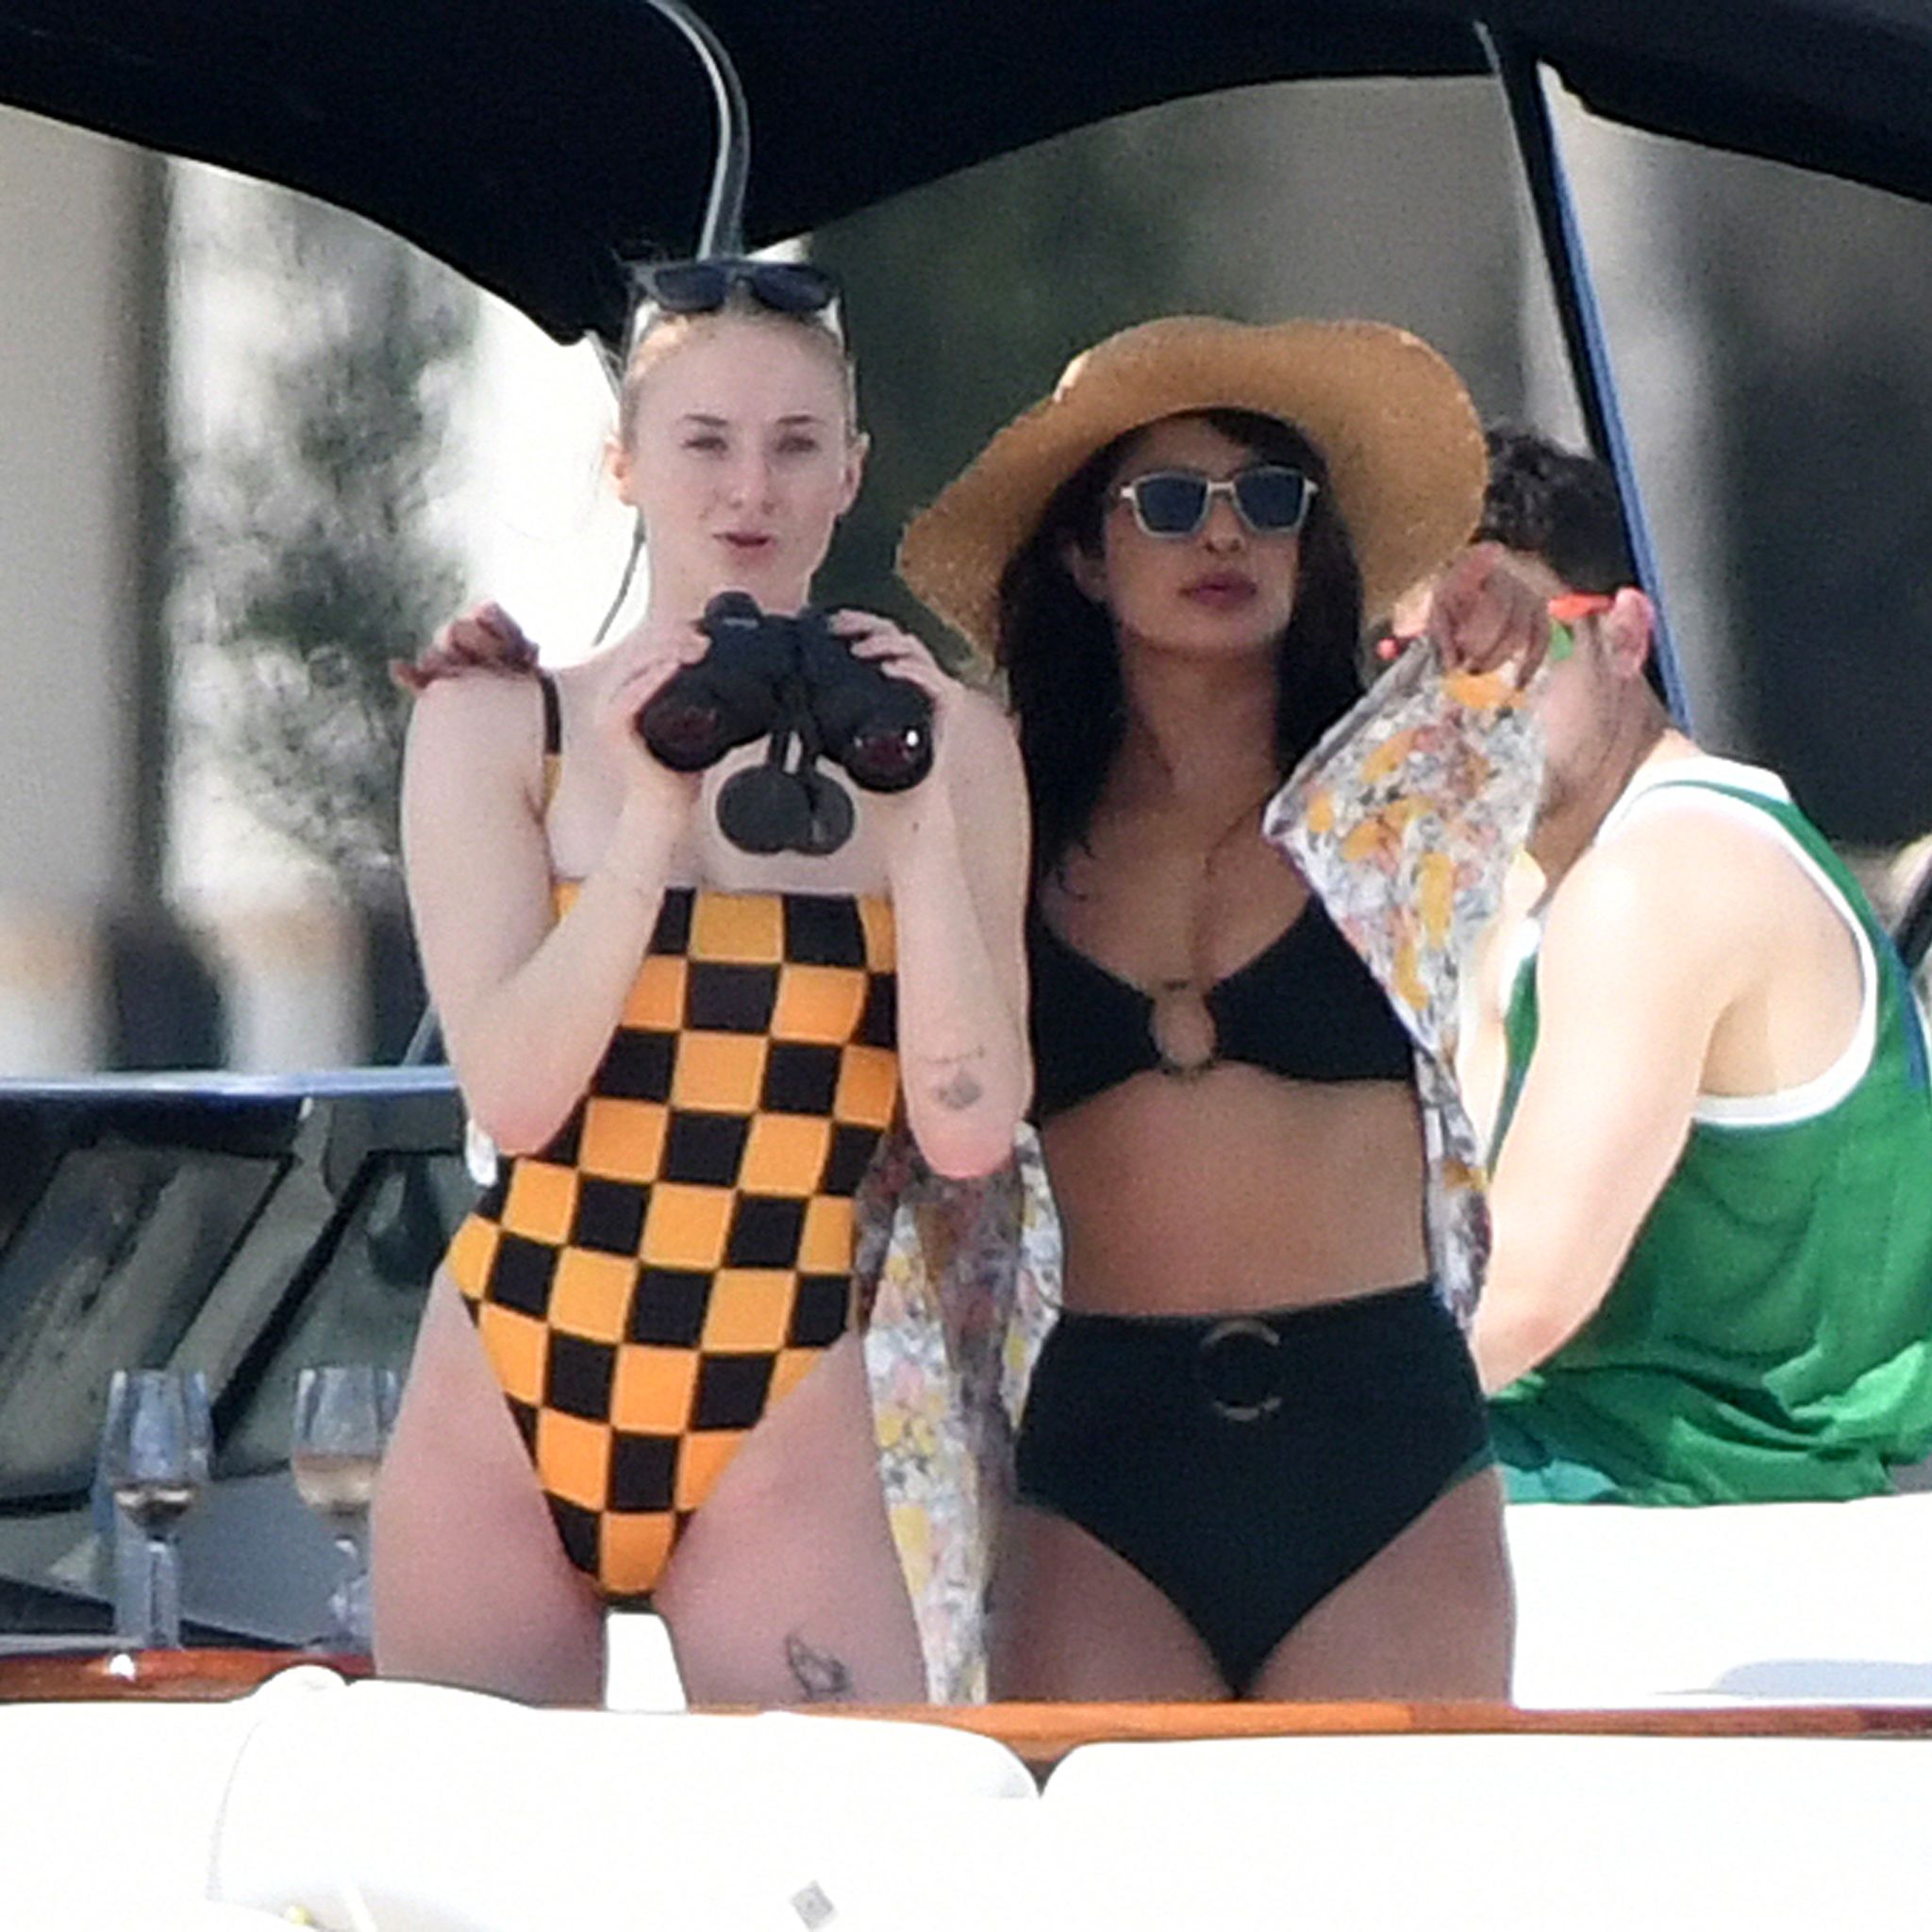 Bikini clad BFF's Sophie Turner and Priyanka Chopra enjoy a yacht day with Joe Jonas and Nick Jonas in Miami